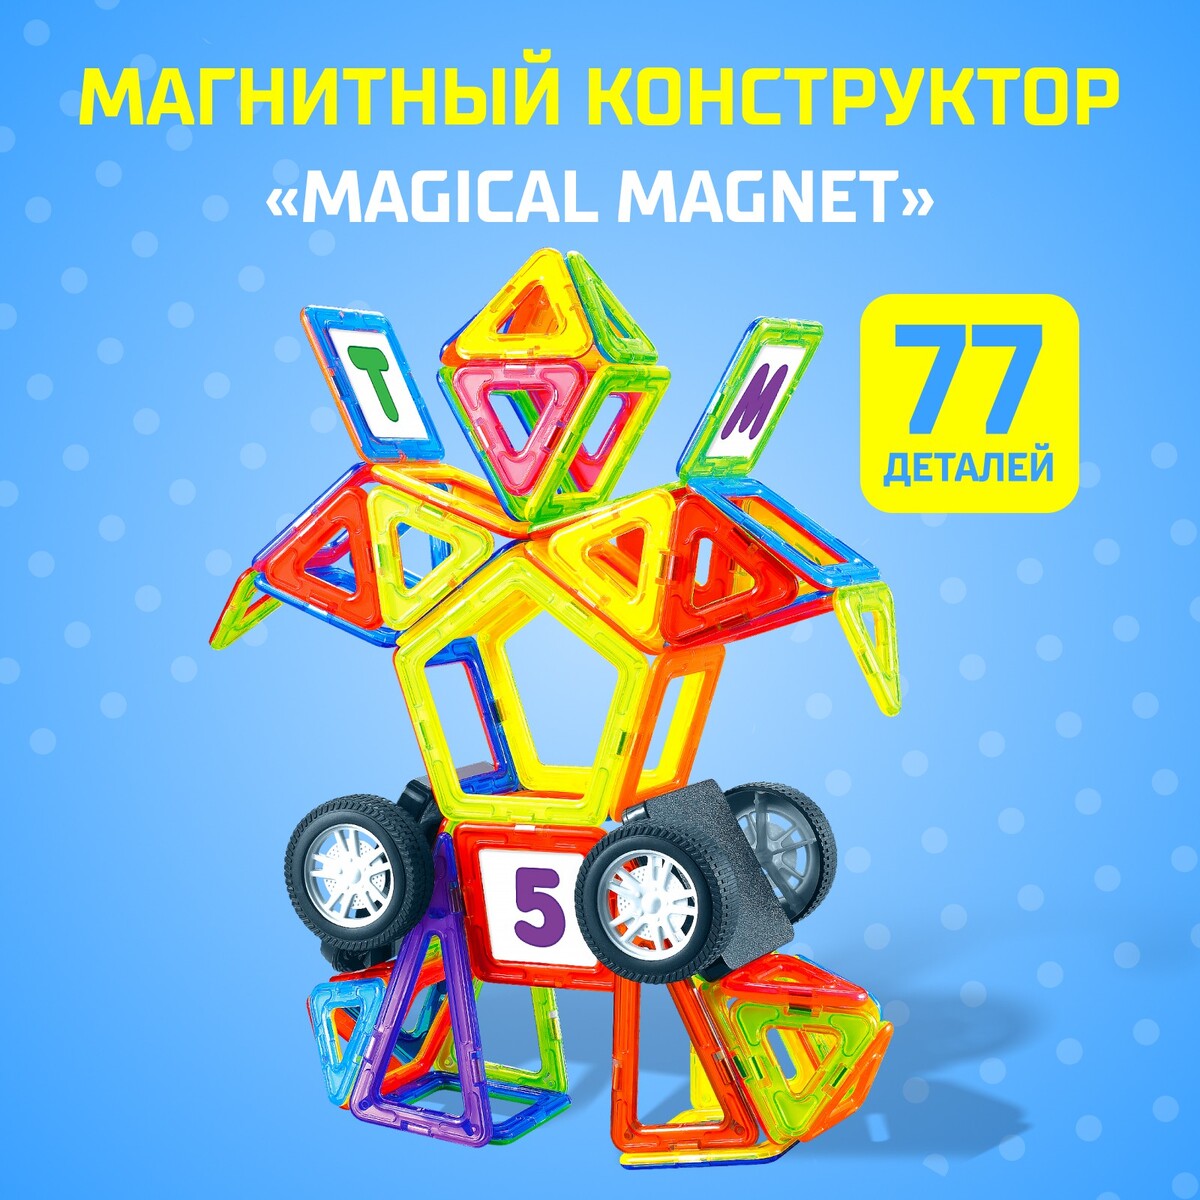 Магнитный конструктор magical magnet, 77 деталей, детали матовые магнитный конструктор magical magnet 34 детали детали матовые